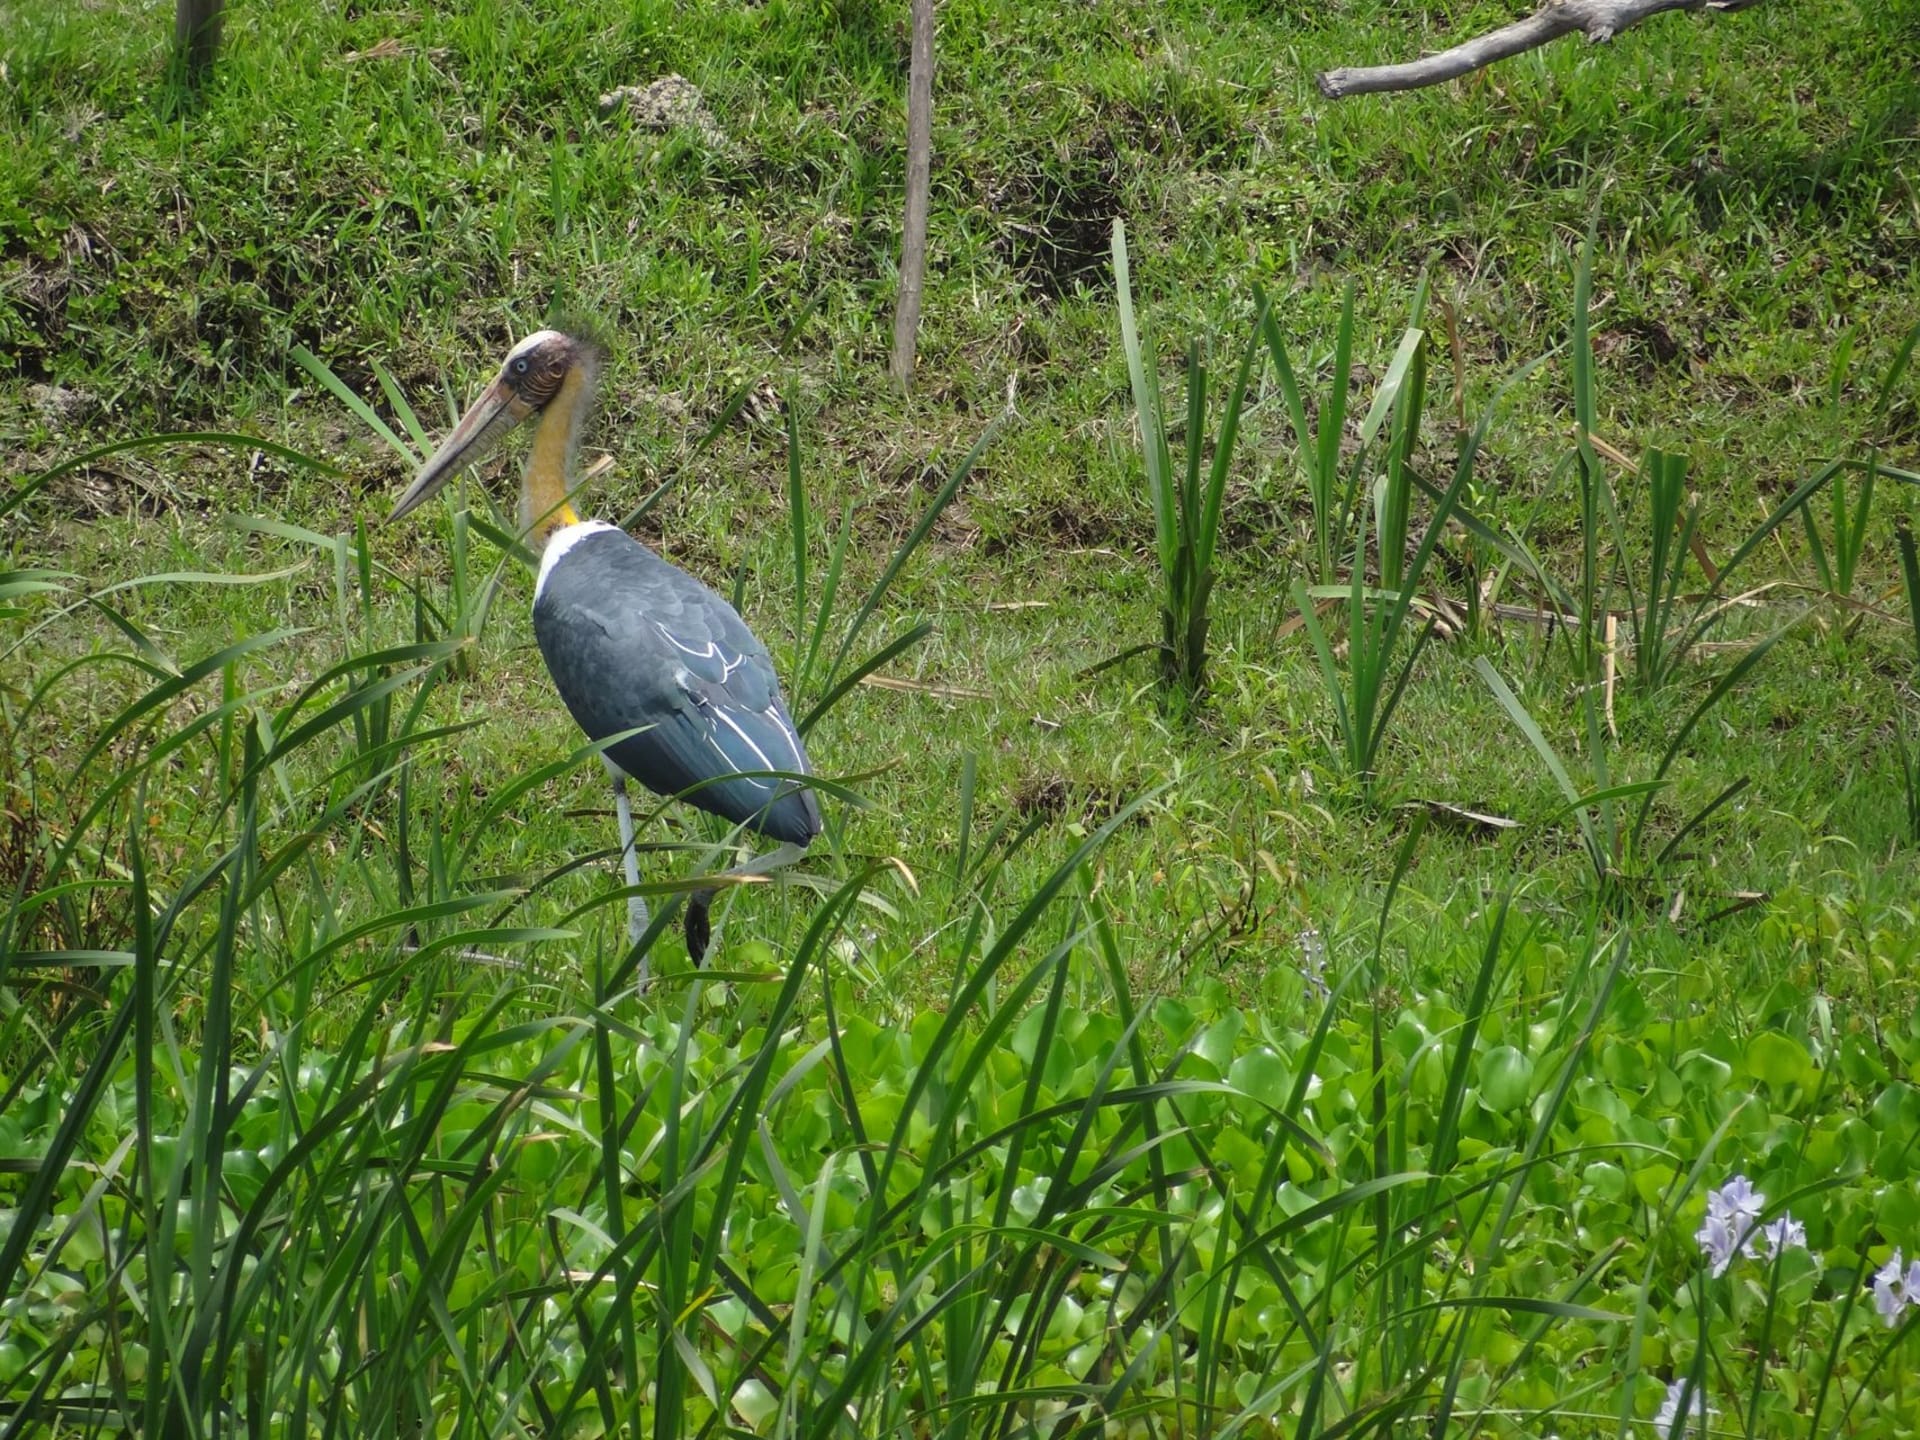 V rezervaci žije téměř pět set druhů ptáků. Zdroj: Koshi Tappu Wildlife Camp